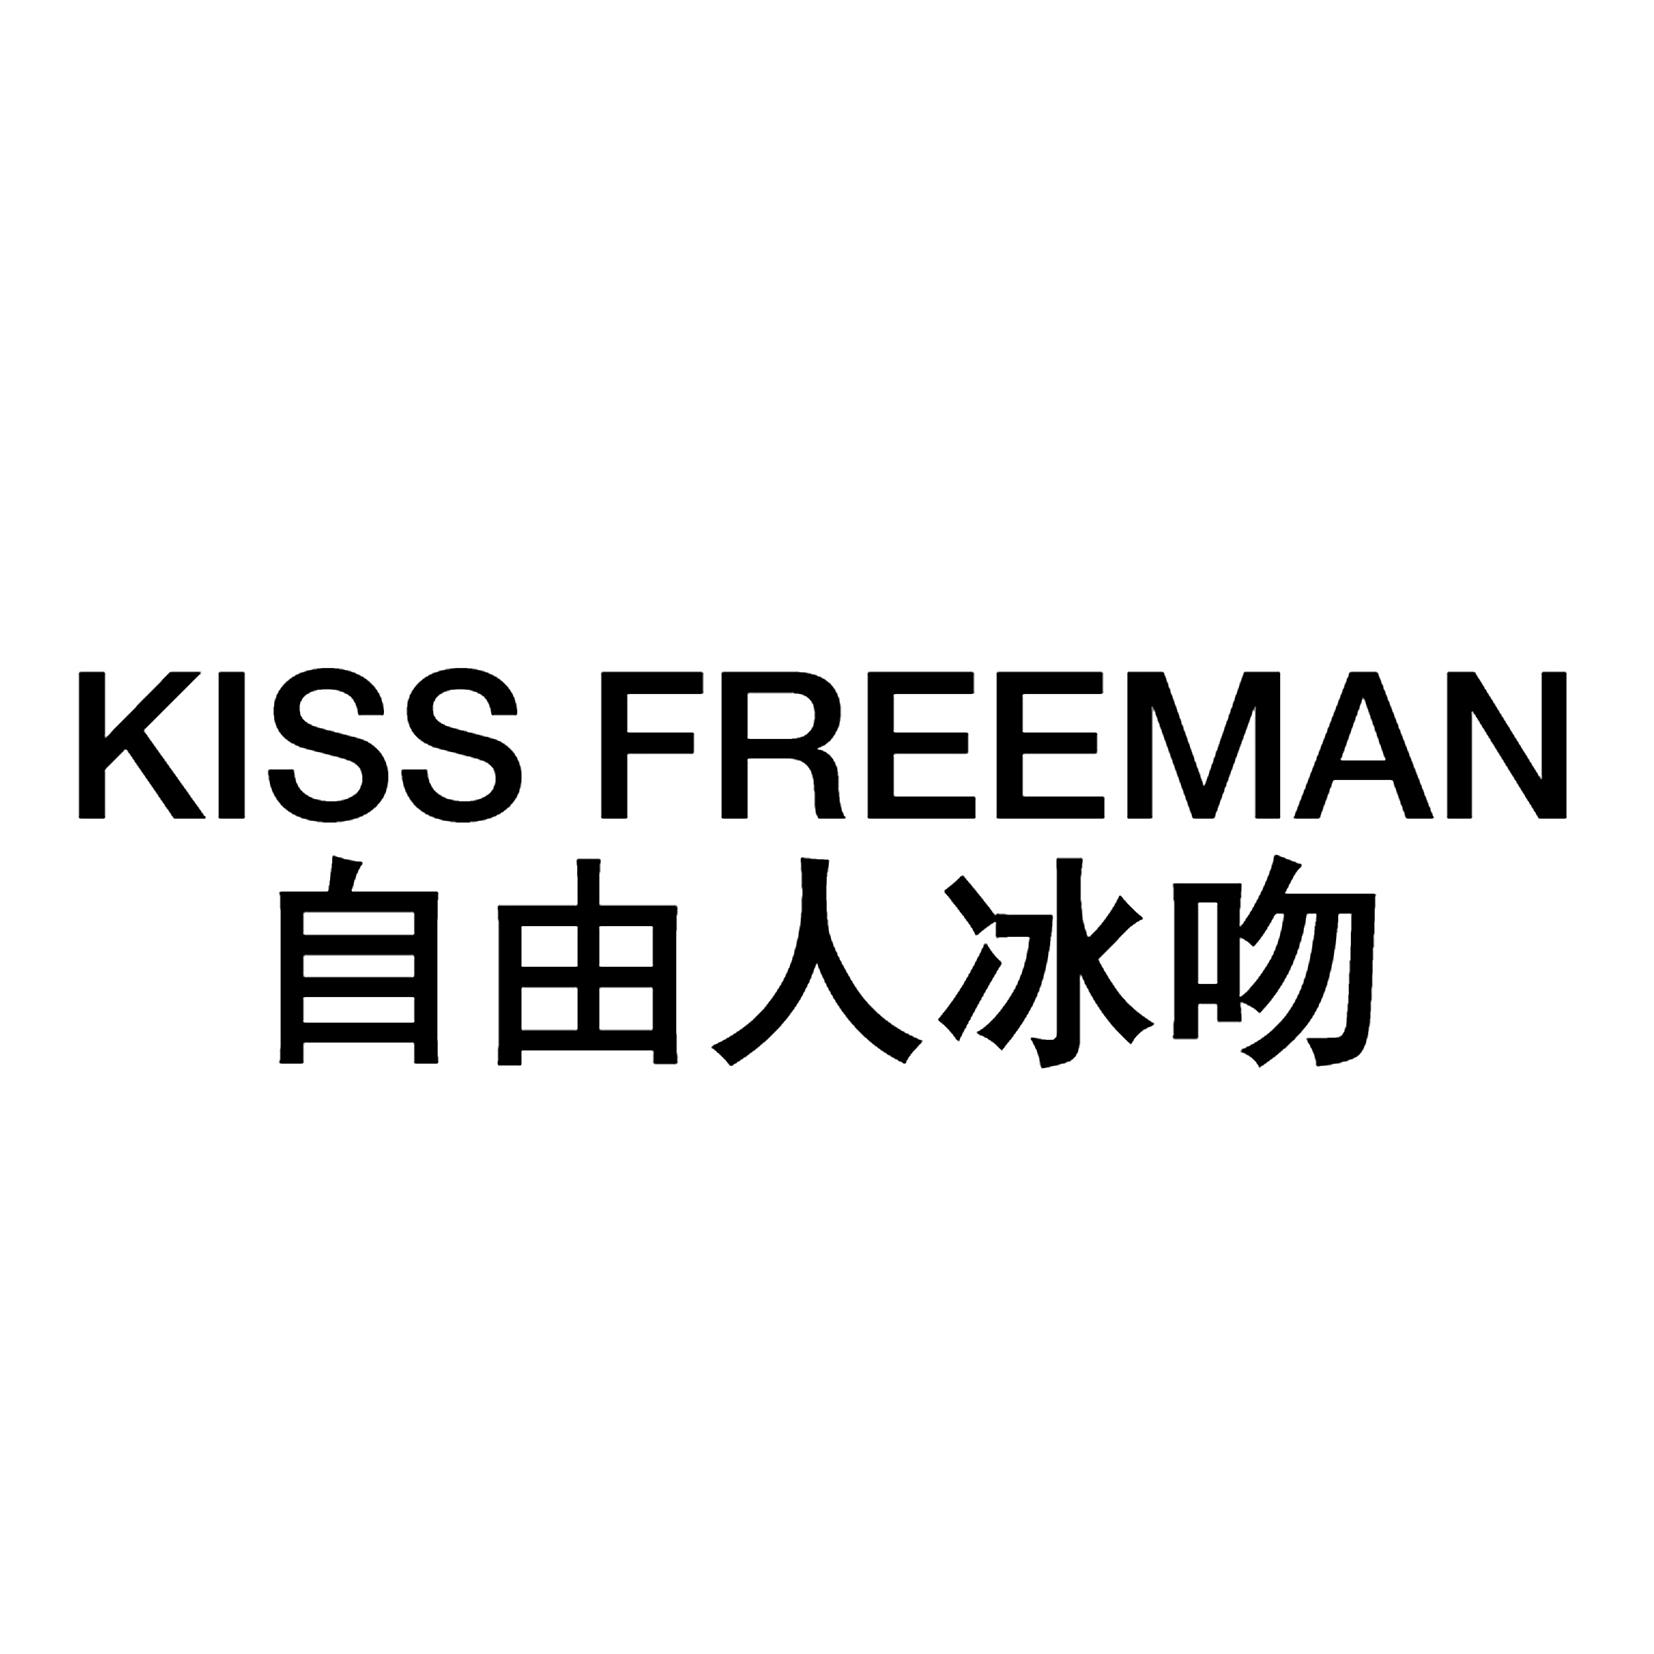 自由人冰吻 KISS FREEMAN